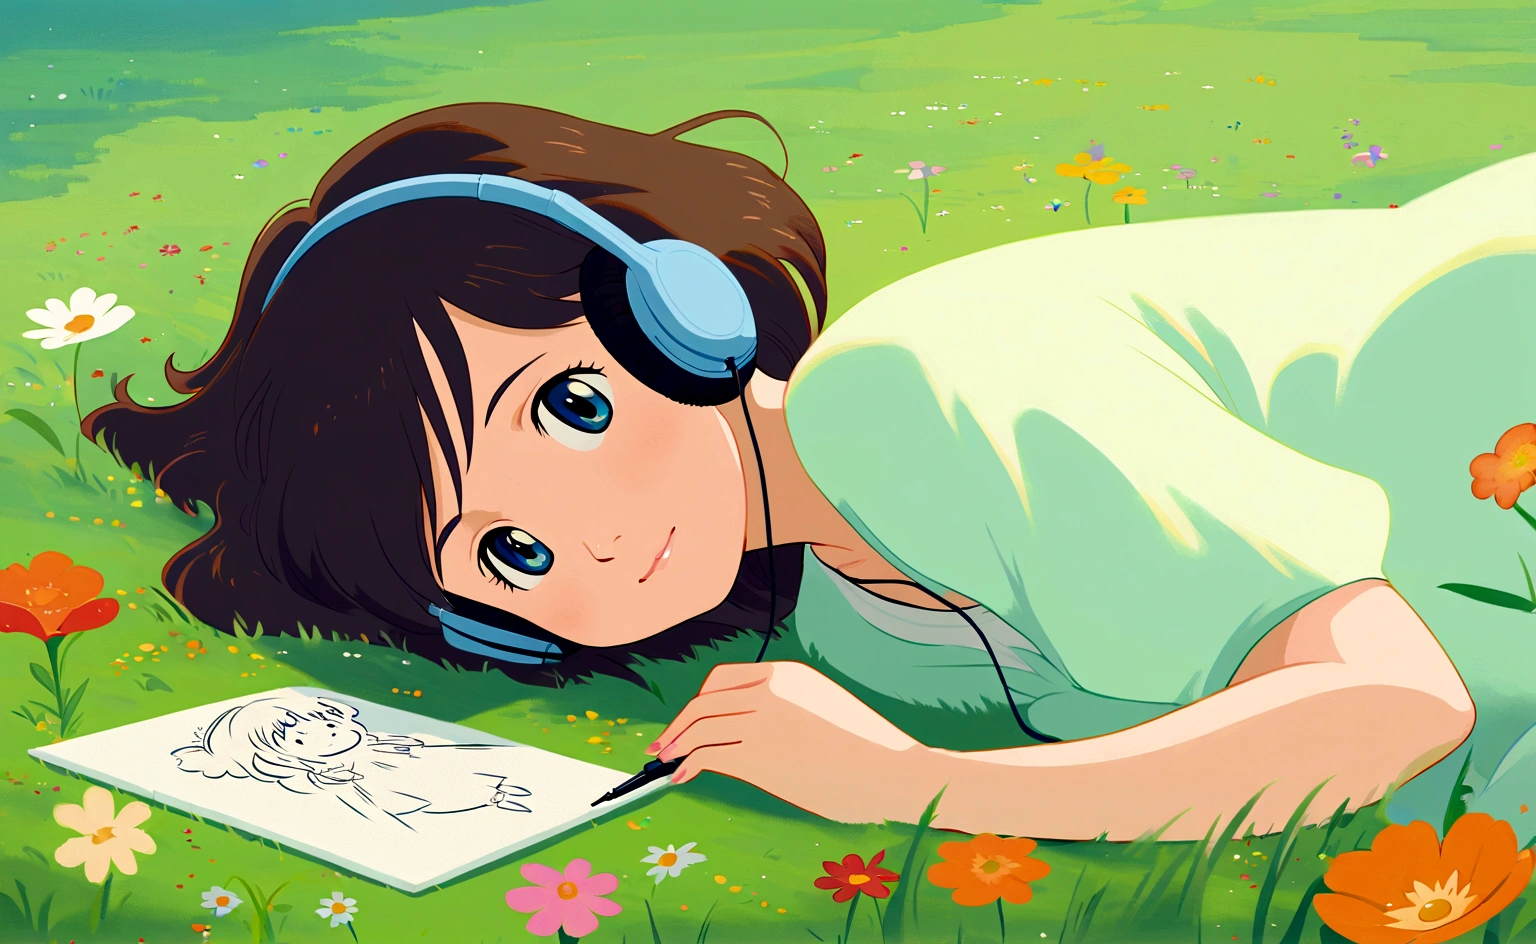 一个可爱的女孩躺在开满美丽花朵的草地上, 简单的, 绘画, 听音乐, 吉卜力工作室风格, 草儿摇曳在一边, 吉卜力 studio inspired, 异想天开, 通风, 冷静的, 安详, 寒意, 吉卜力, 日本动画片, 空灵的